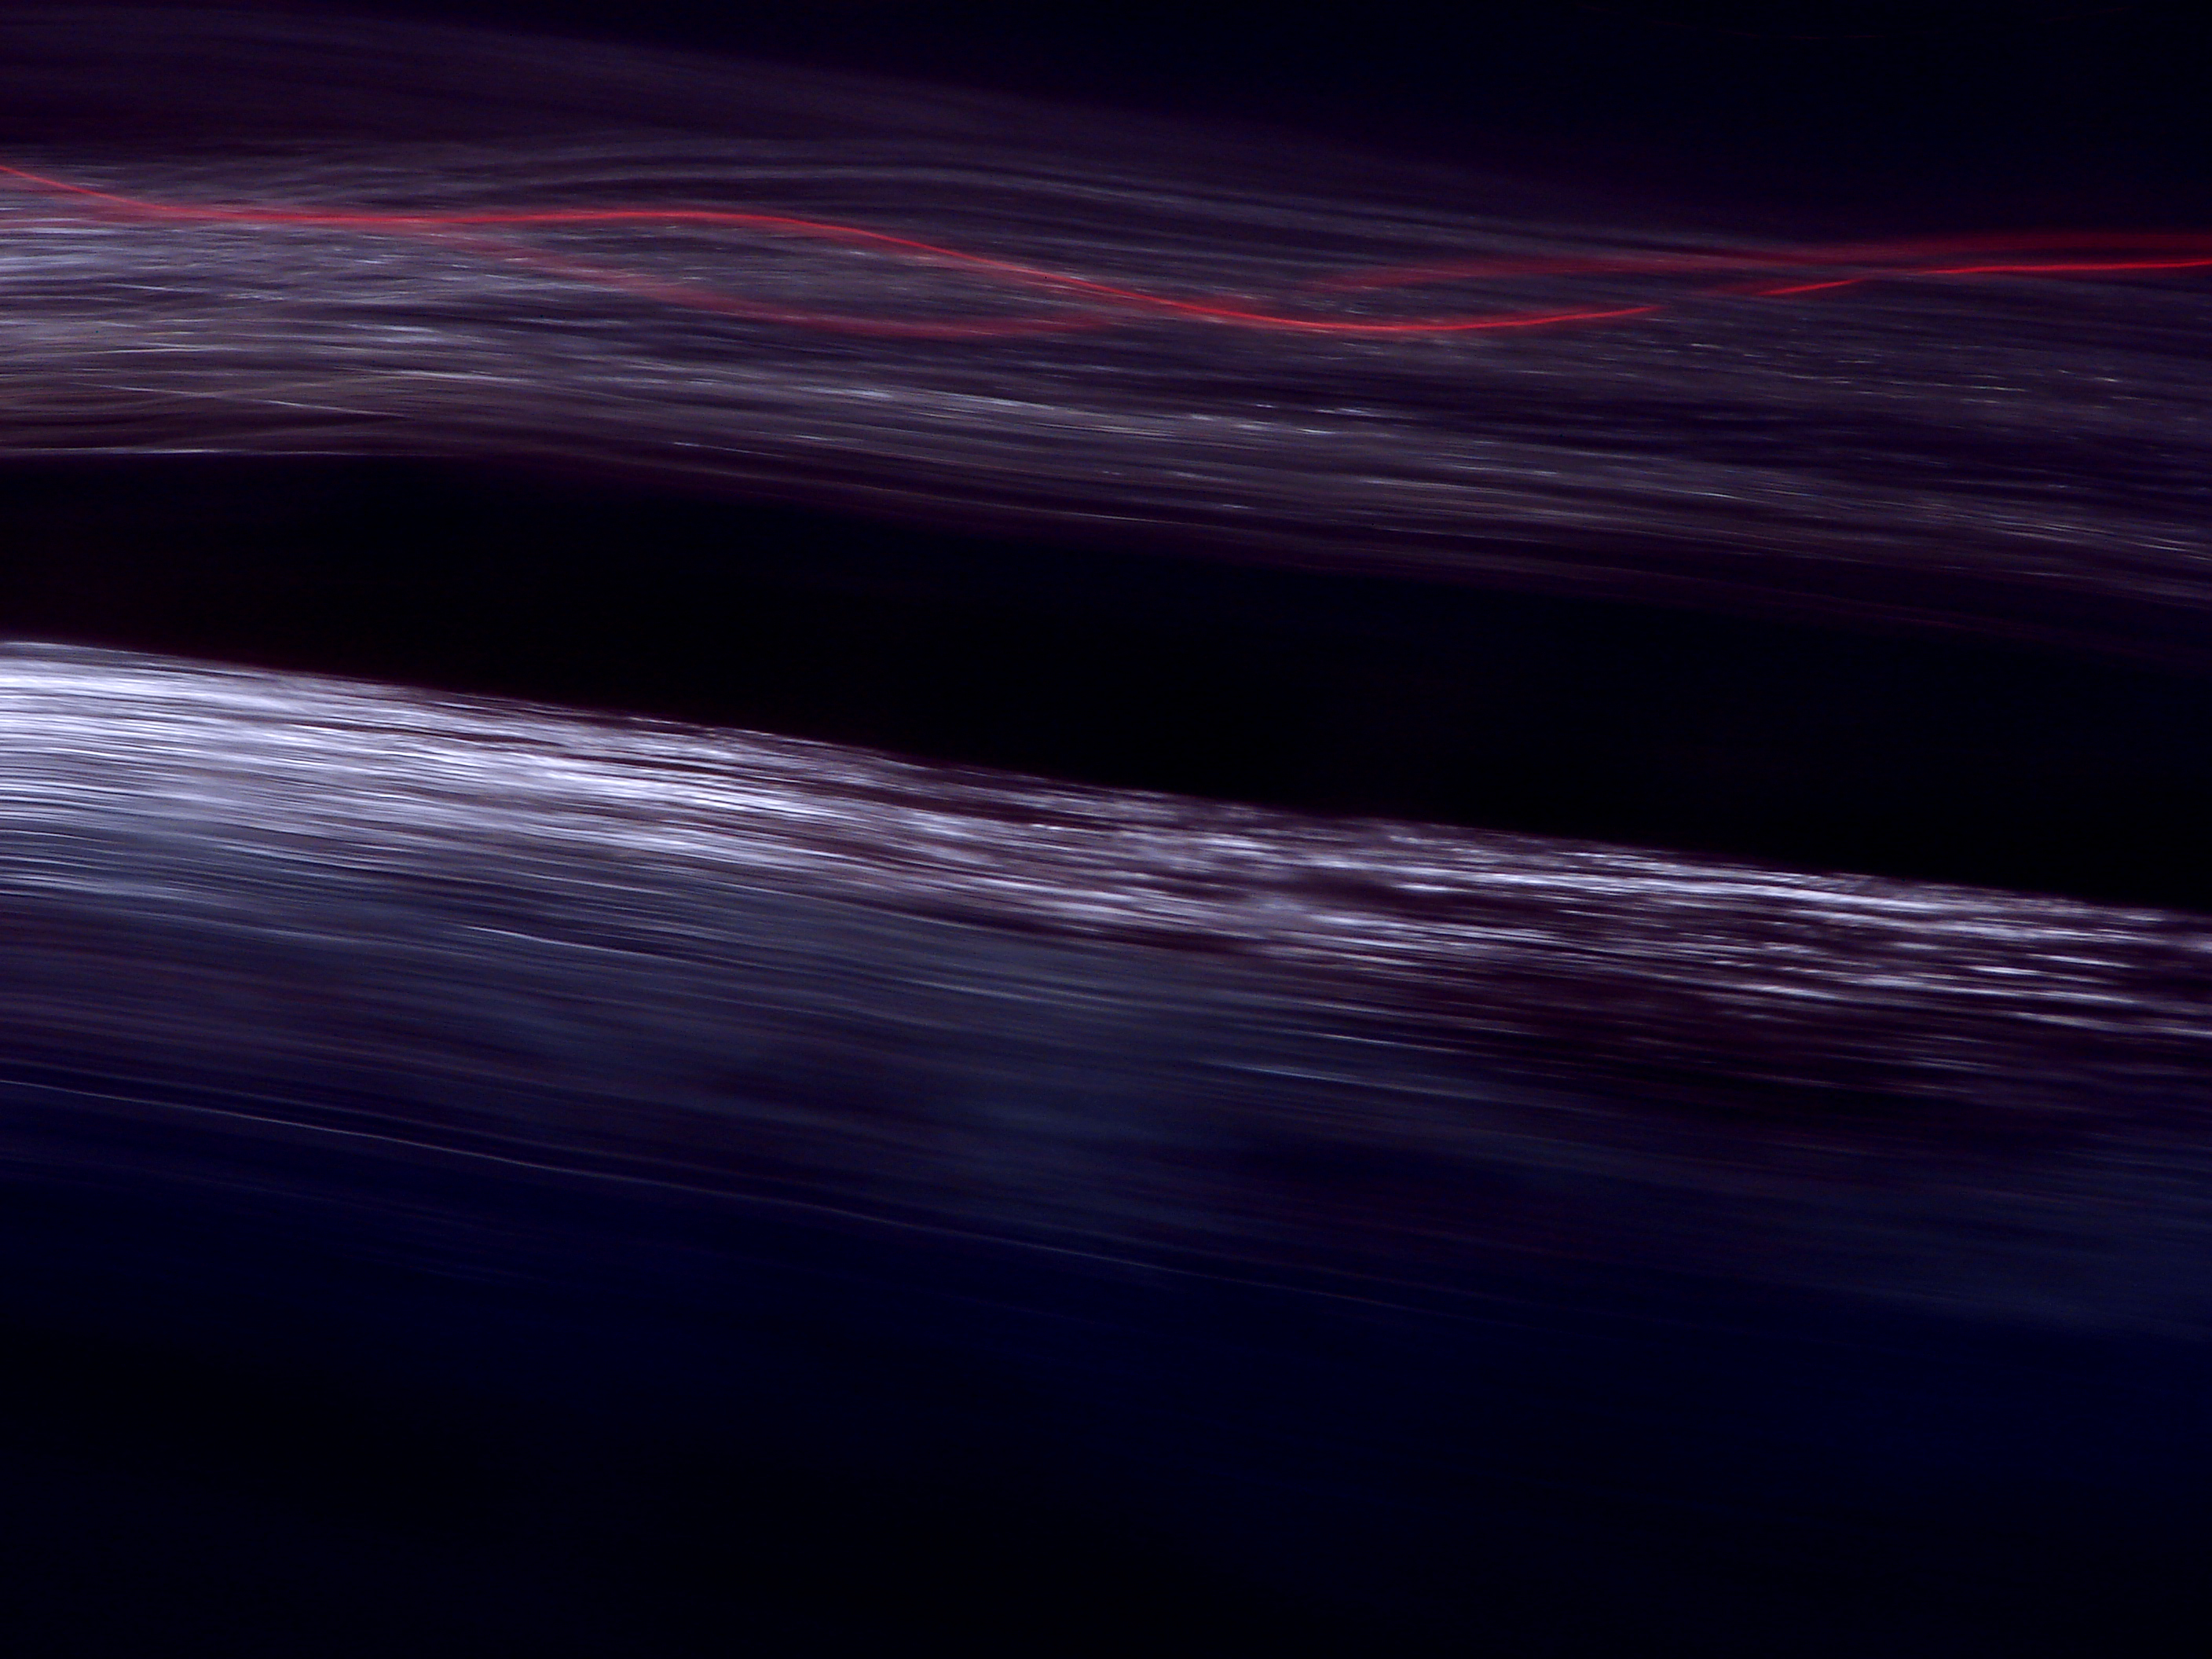 Light streaks in motion photo